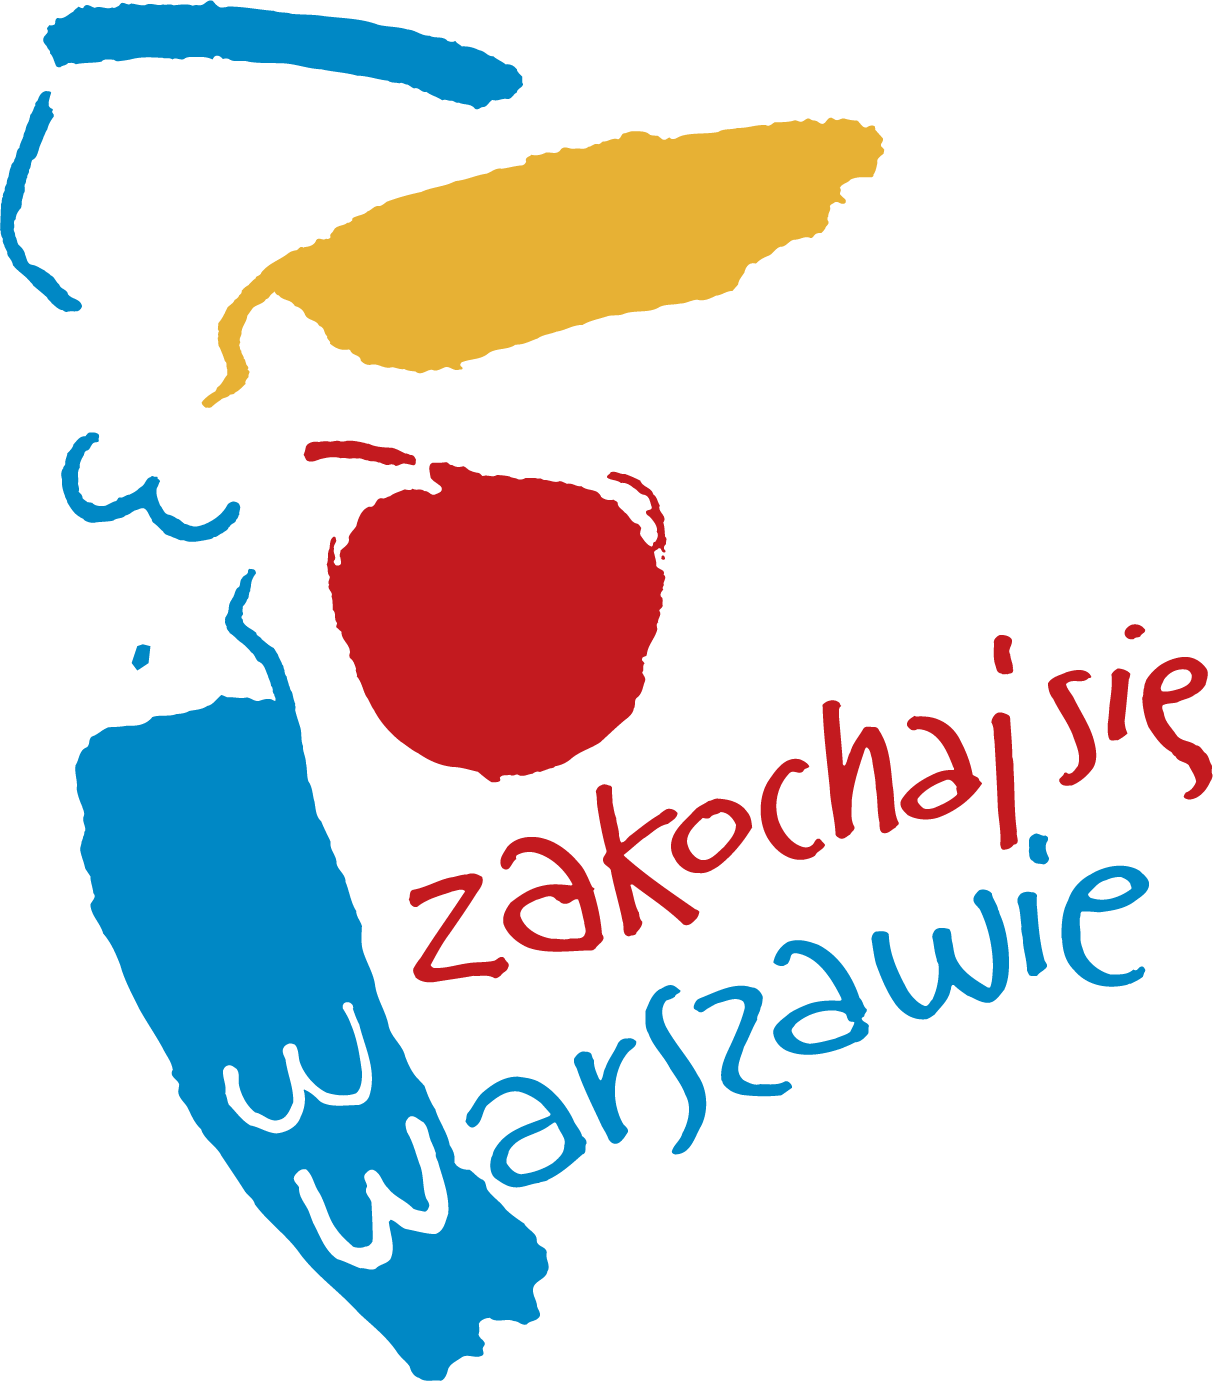 Znak promocyjny m.st. Warszawy